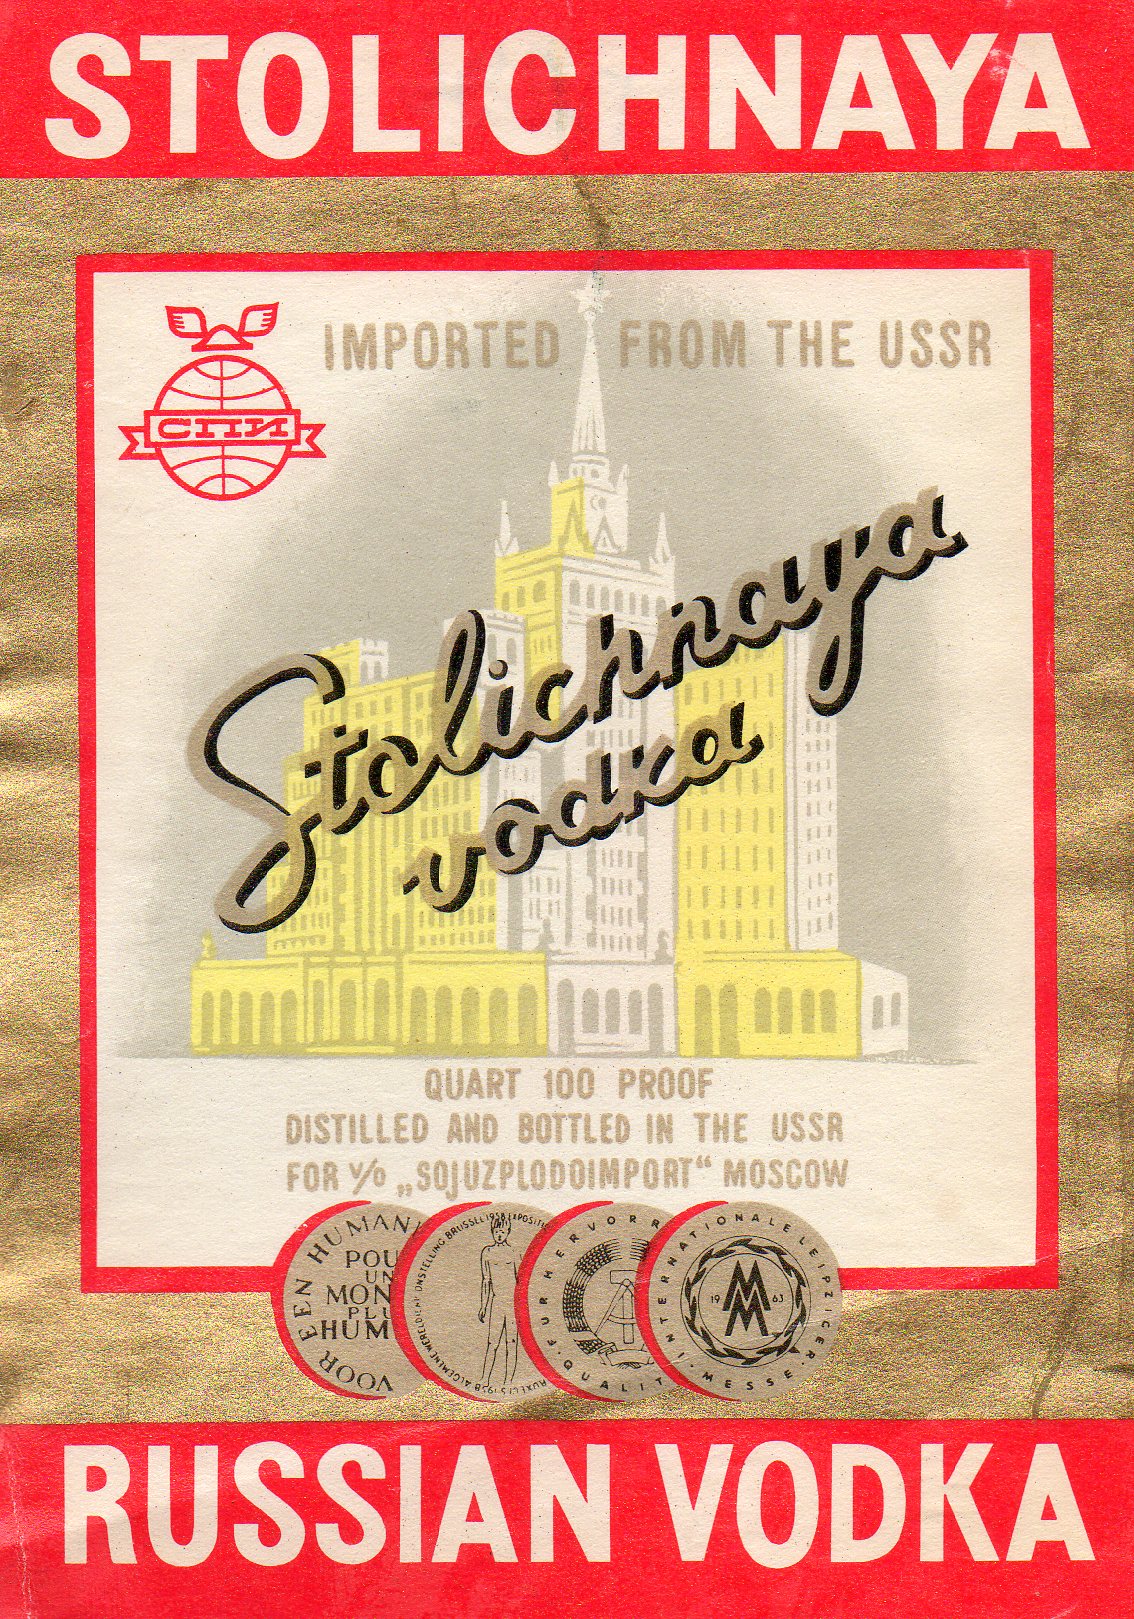 Этикетка водки Столичная в СССР что изображено